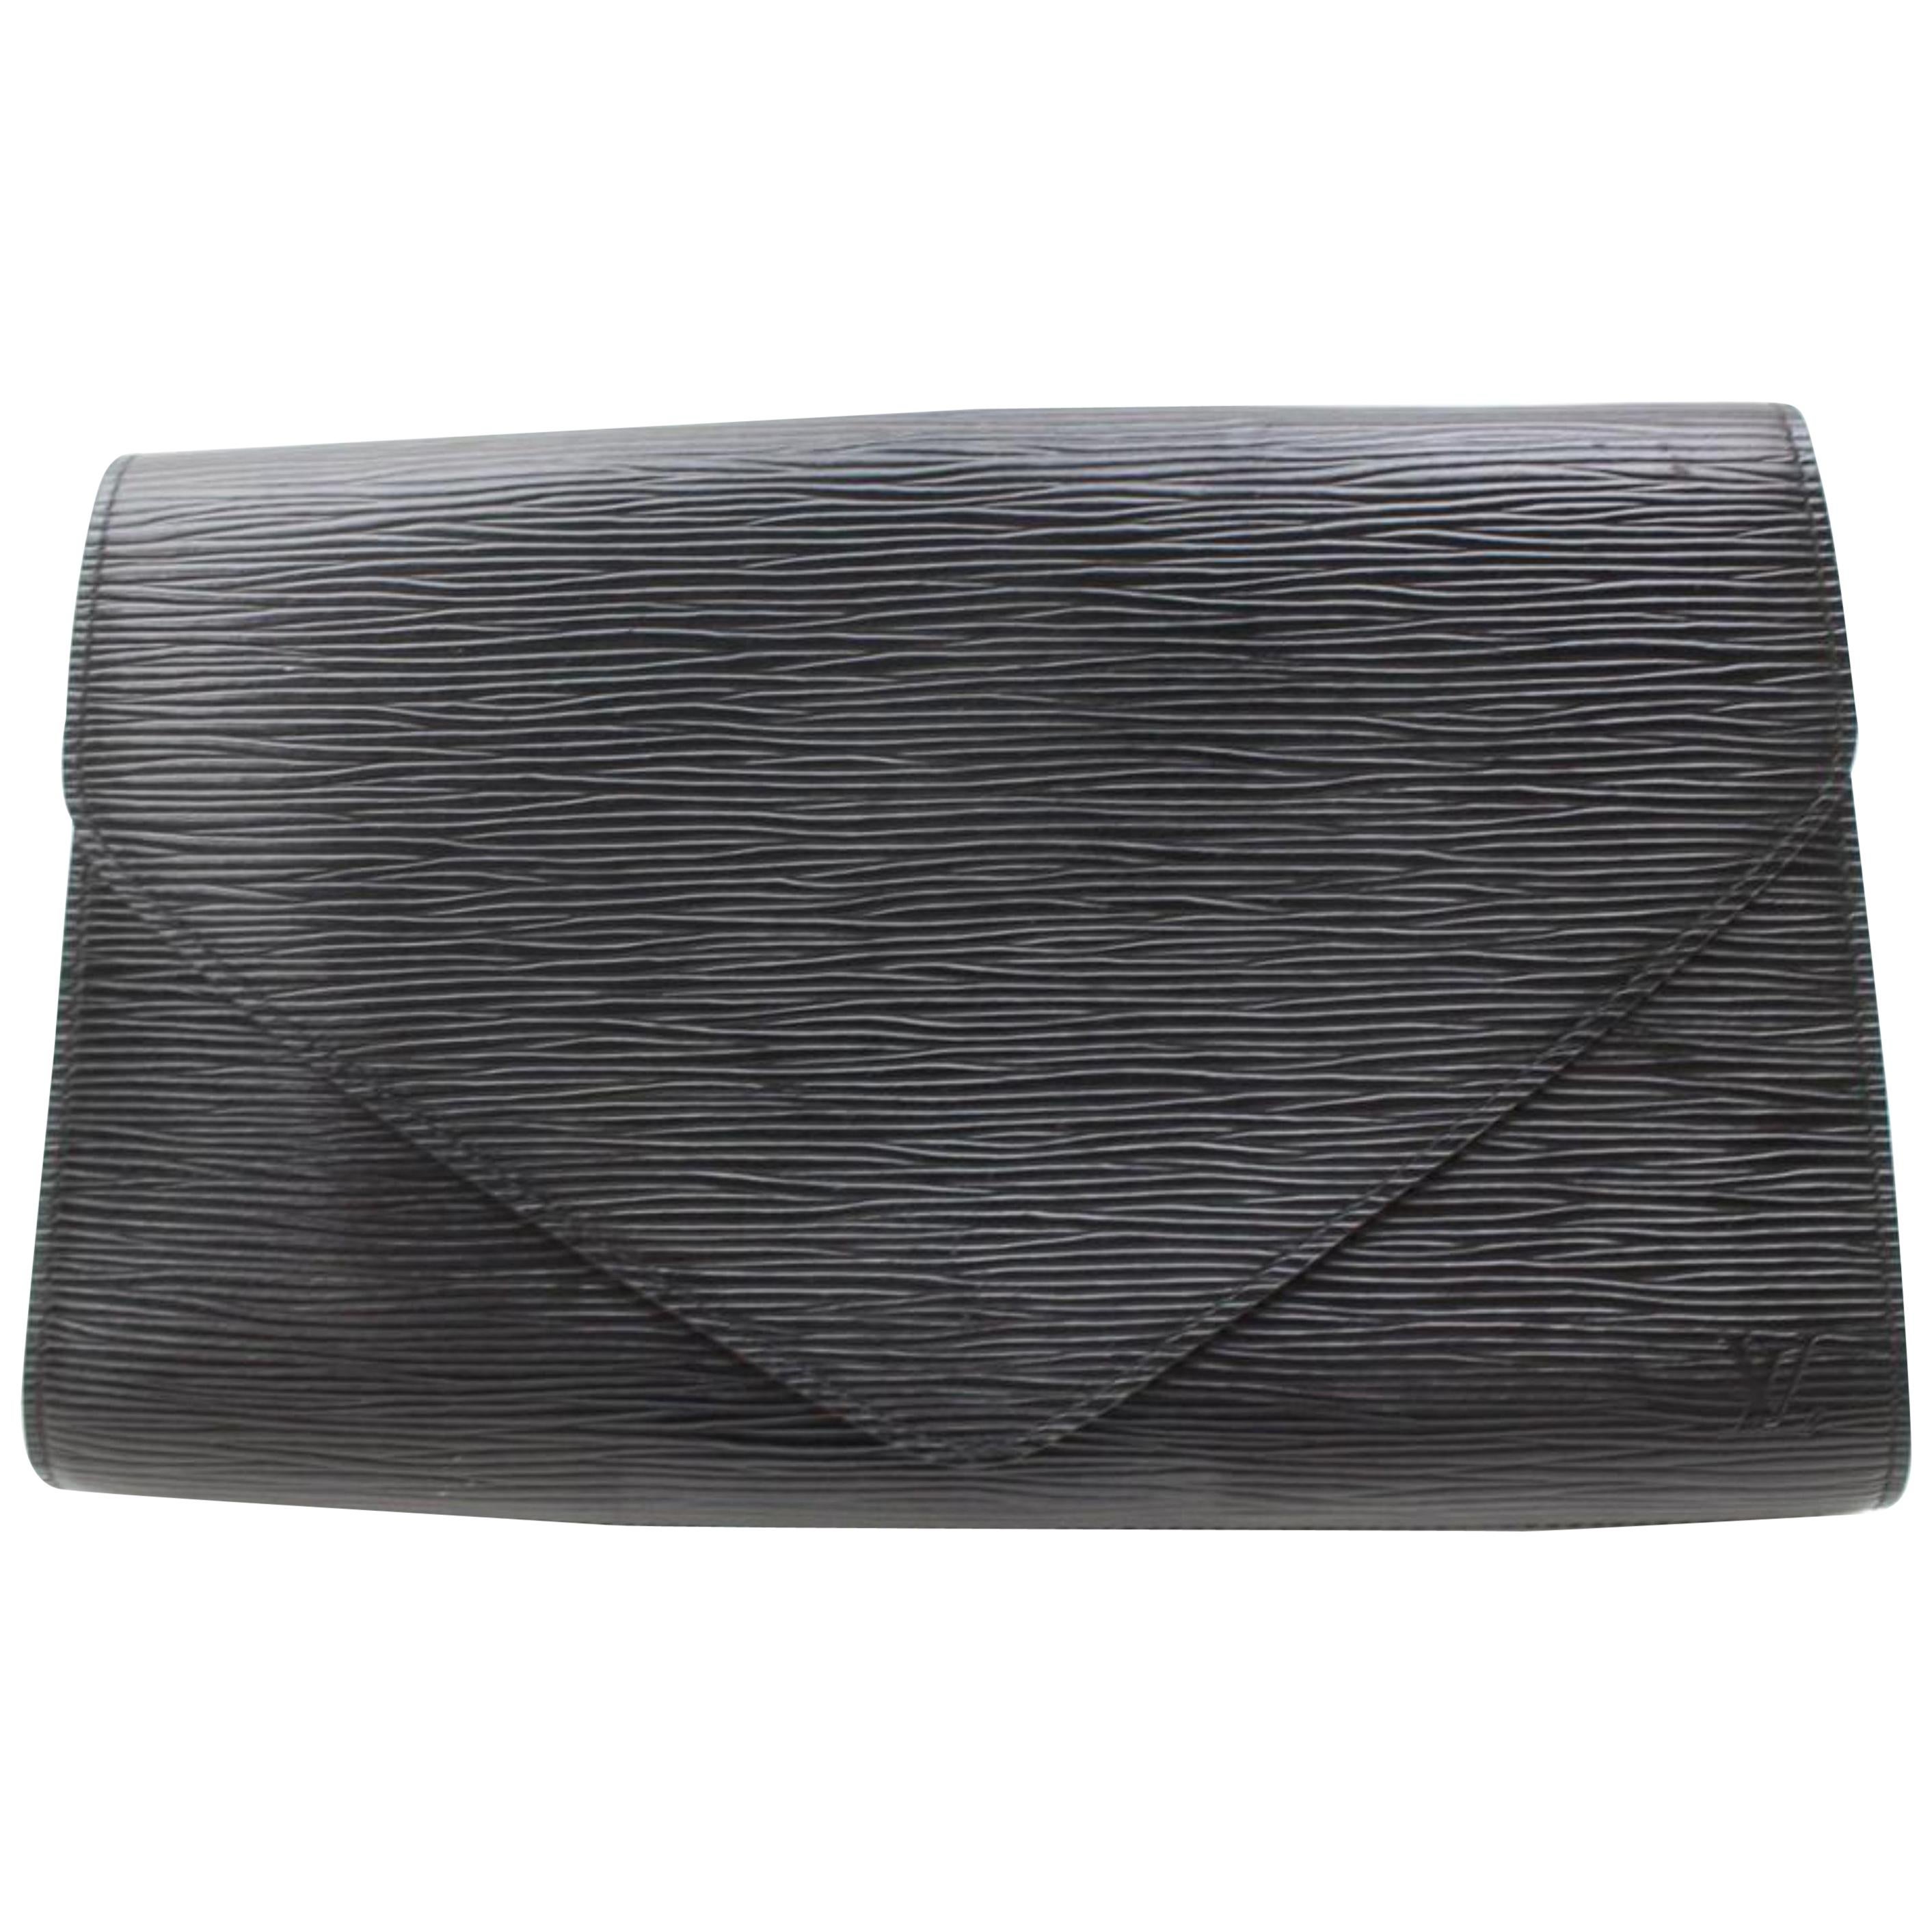 Louis Vuitton Pochette Noir Art Deco Envelope 868802 Black Leather Clutch For Sale